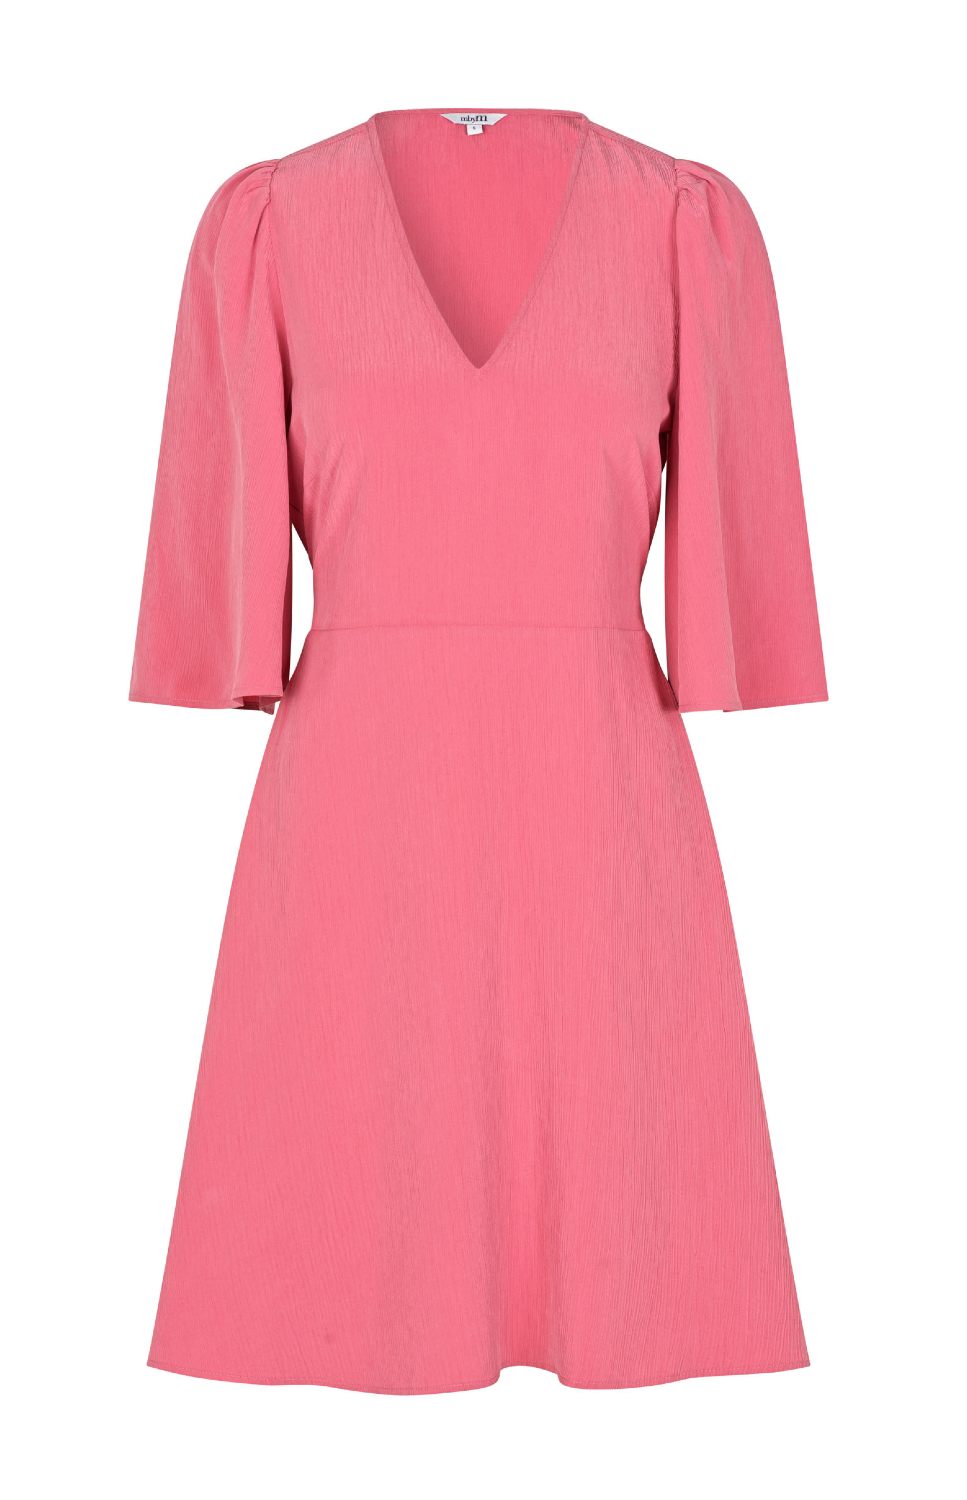 Roze midi-jurk Melika van het merk mbyM. De Slate Rose midi-jurk heeft korte, wijde mouwen en een v-hals. De Melika jurk heeft een elastische tailleband op de rug waardoor deze mooi getailleerd valt. De roze jurk is gemaakt van het duurzame modal. Shop de nieuwe collectie jurken, roze jurken, mbyM zomerjurken.